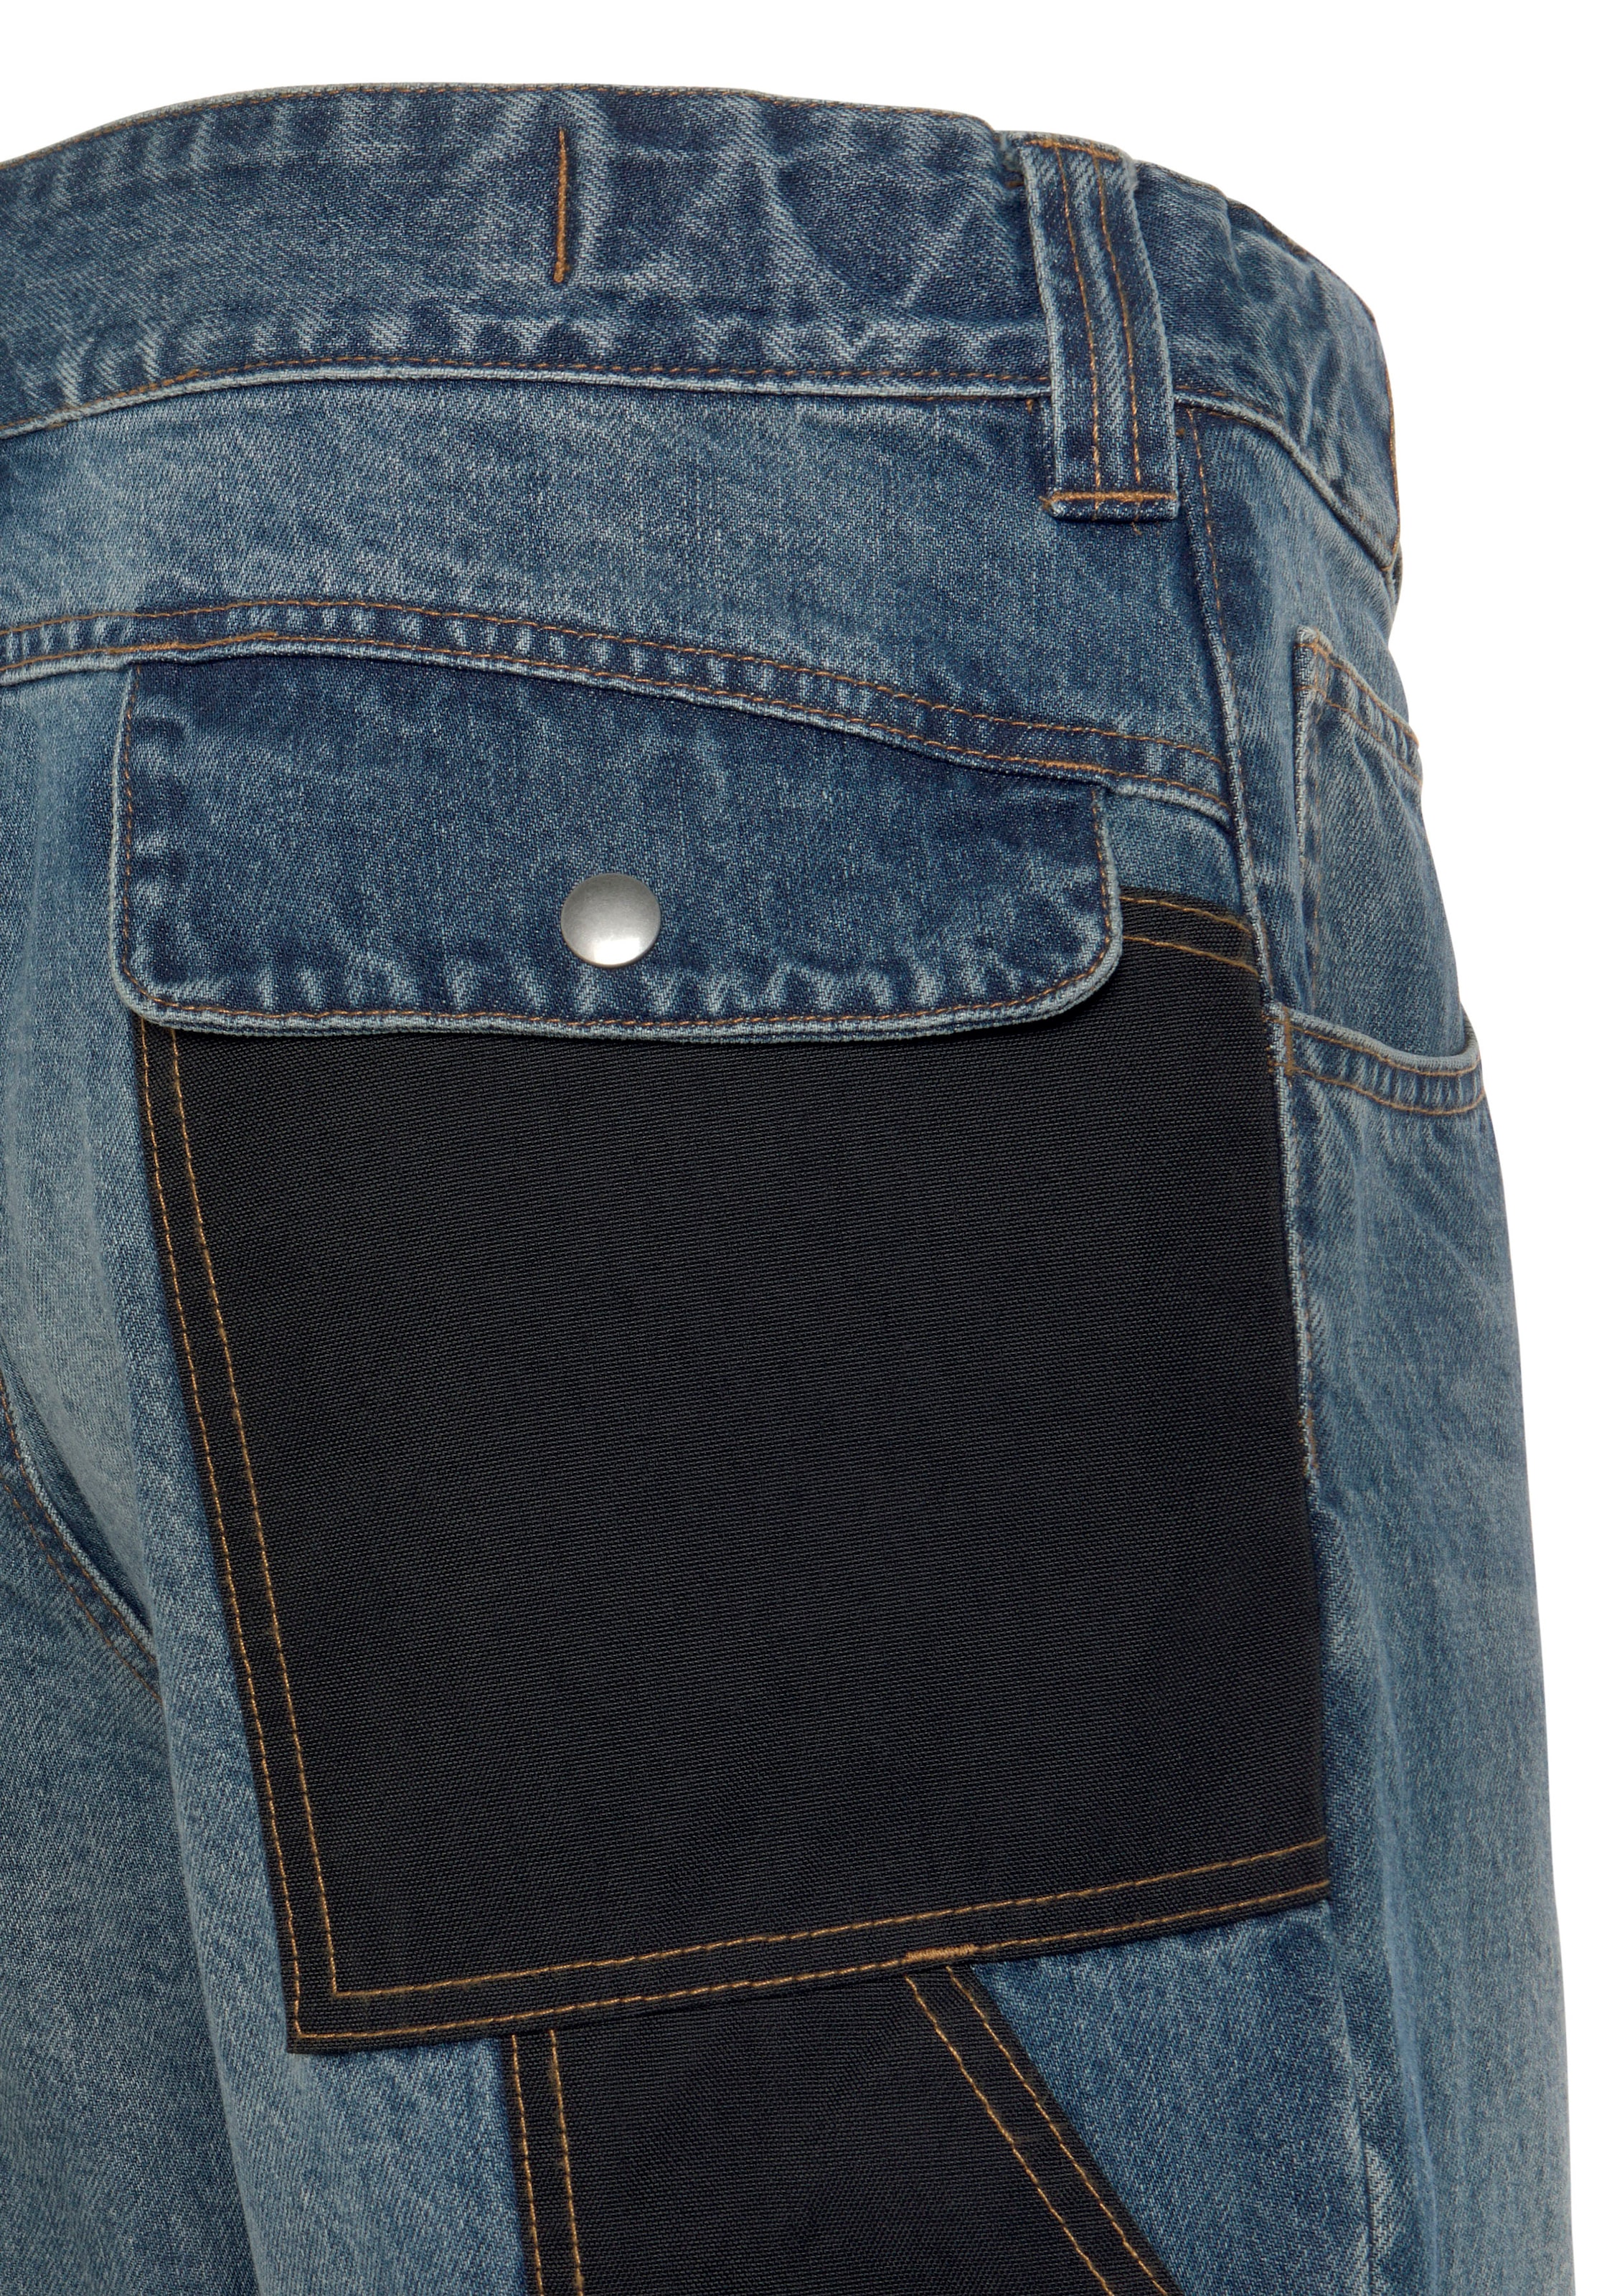 Northern Country Arbeitshose »Multipocket Jeans«, (aus 100% Baumwolle, robuster Jeansstoff, comfort fit), mit dehnbarem Bund, 9 praktischen Taschen, Knieverstärkung aus Cordura